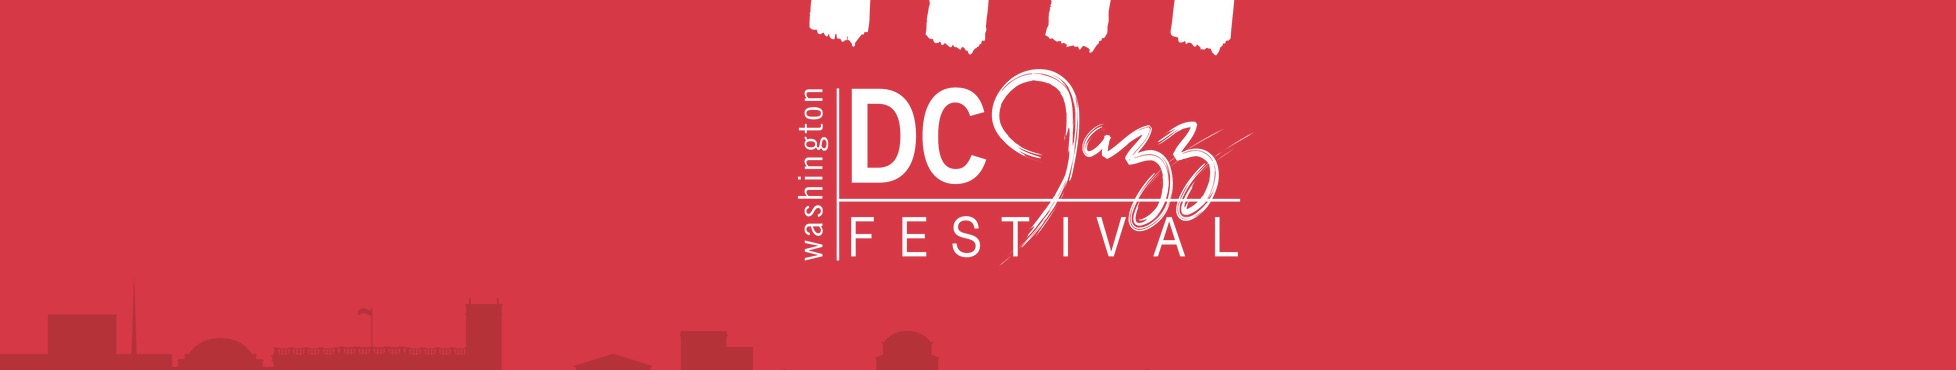 DC Jazz Festival 2023 banner